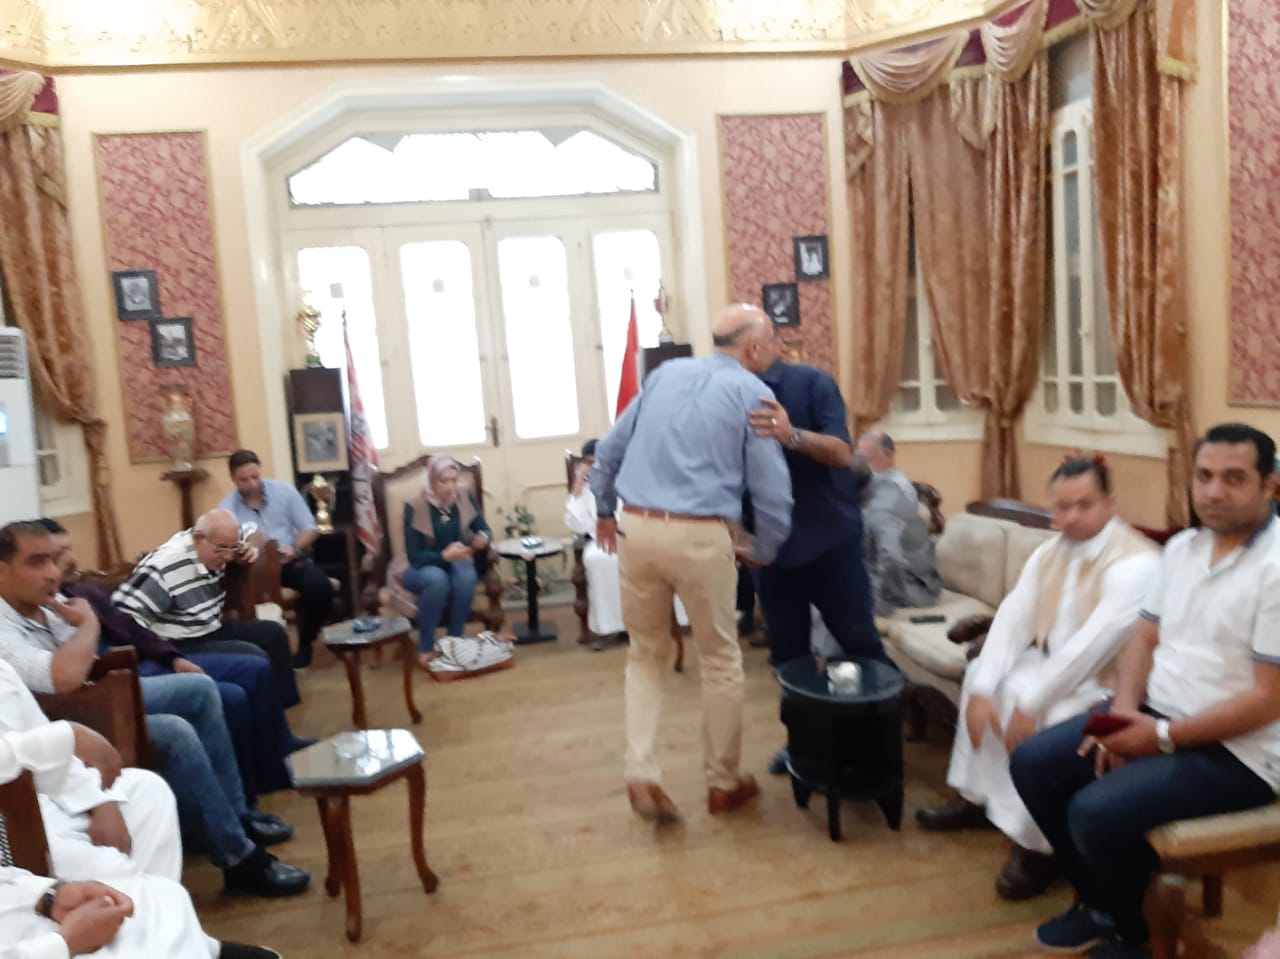 مجلس الجبلاية واعضاء الجمعية العمومية في افطار الشامي بالمحلة (8)